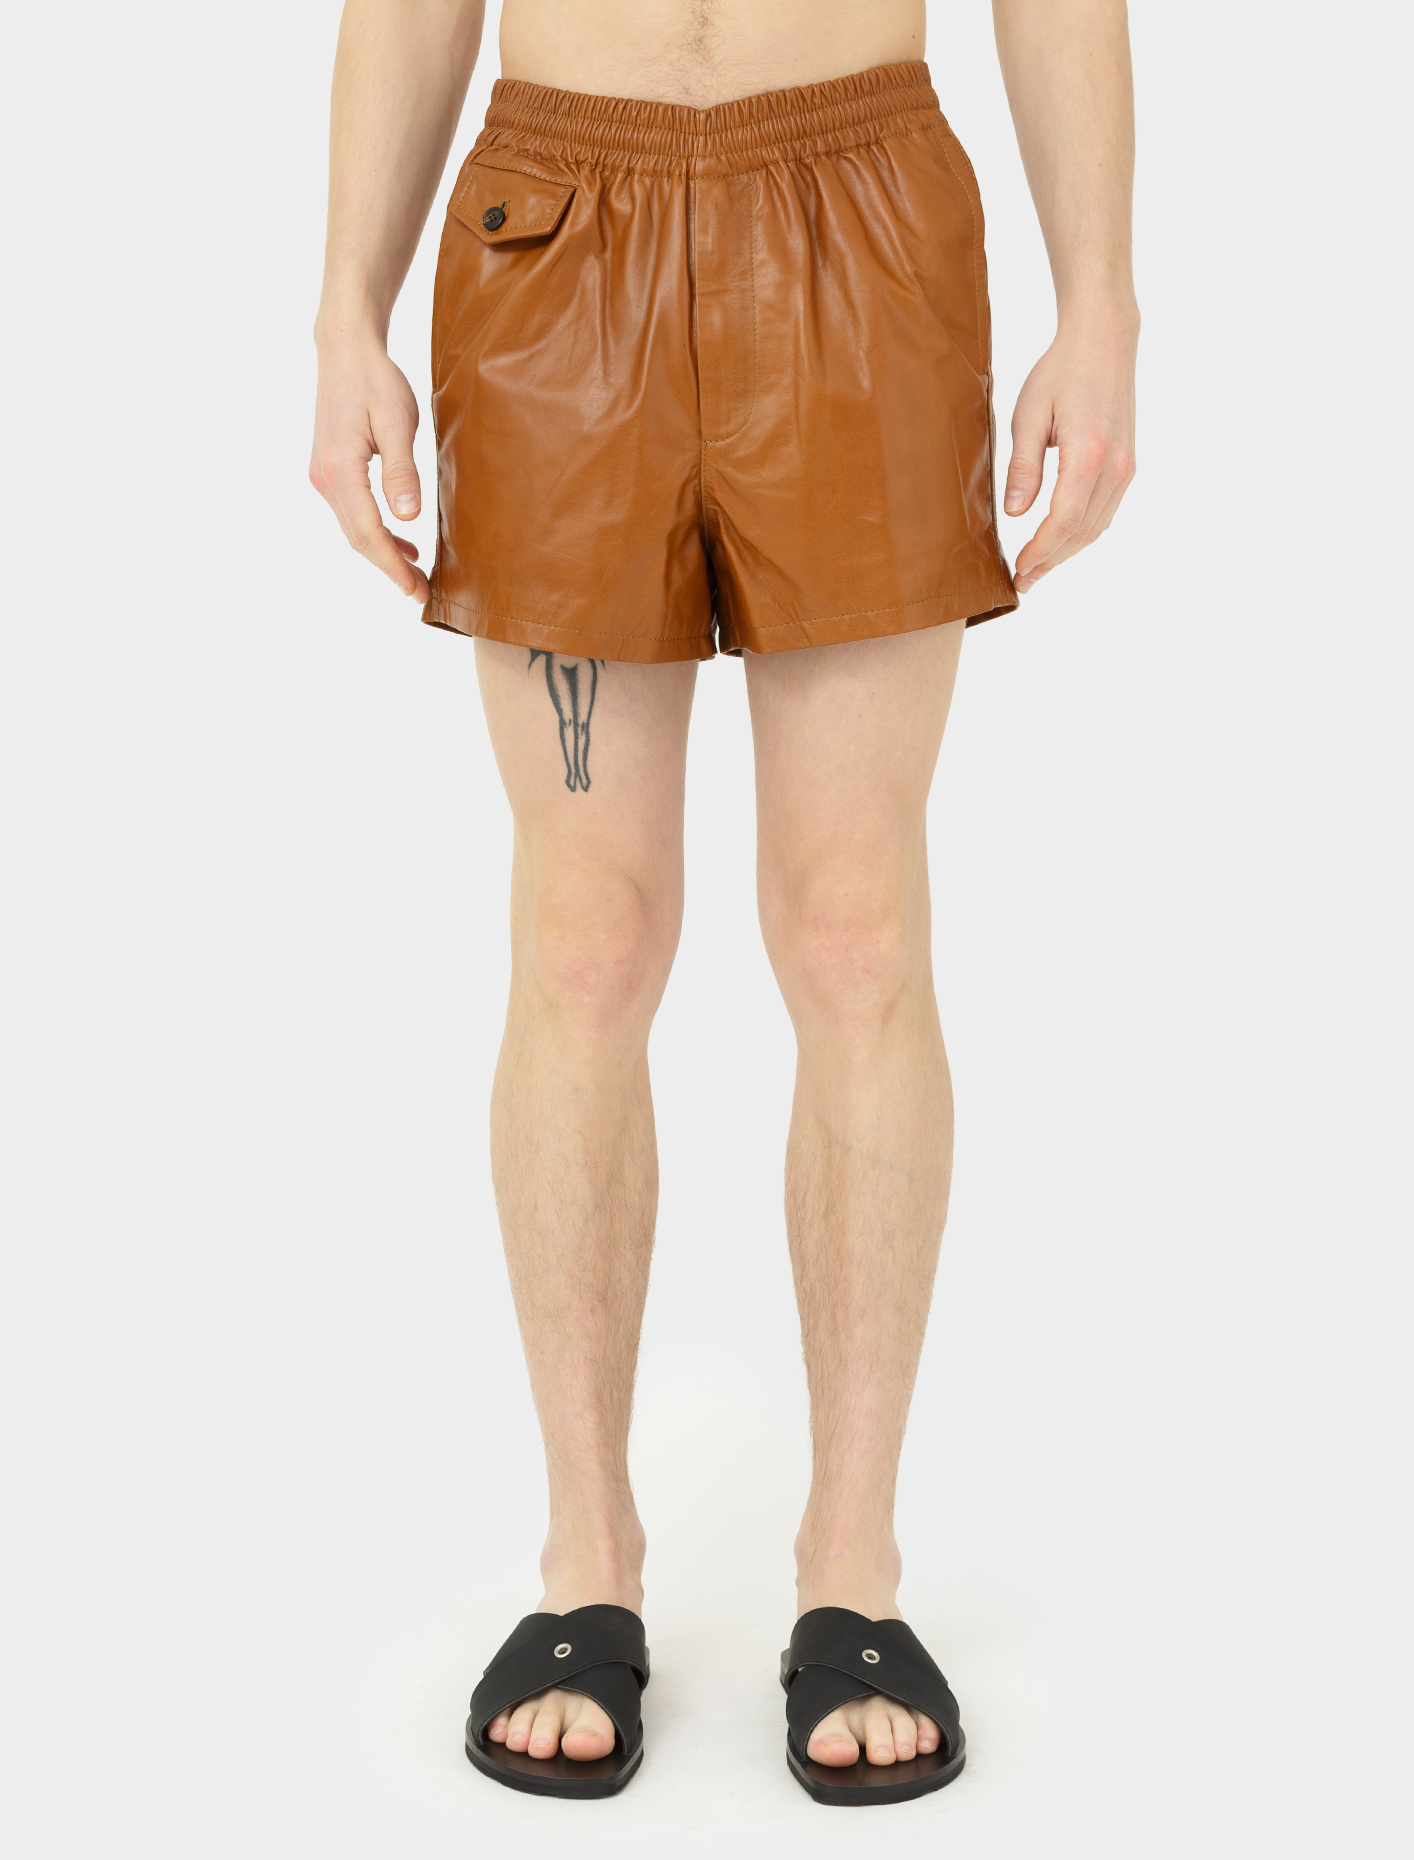 van shorts